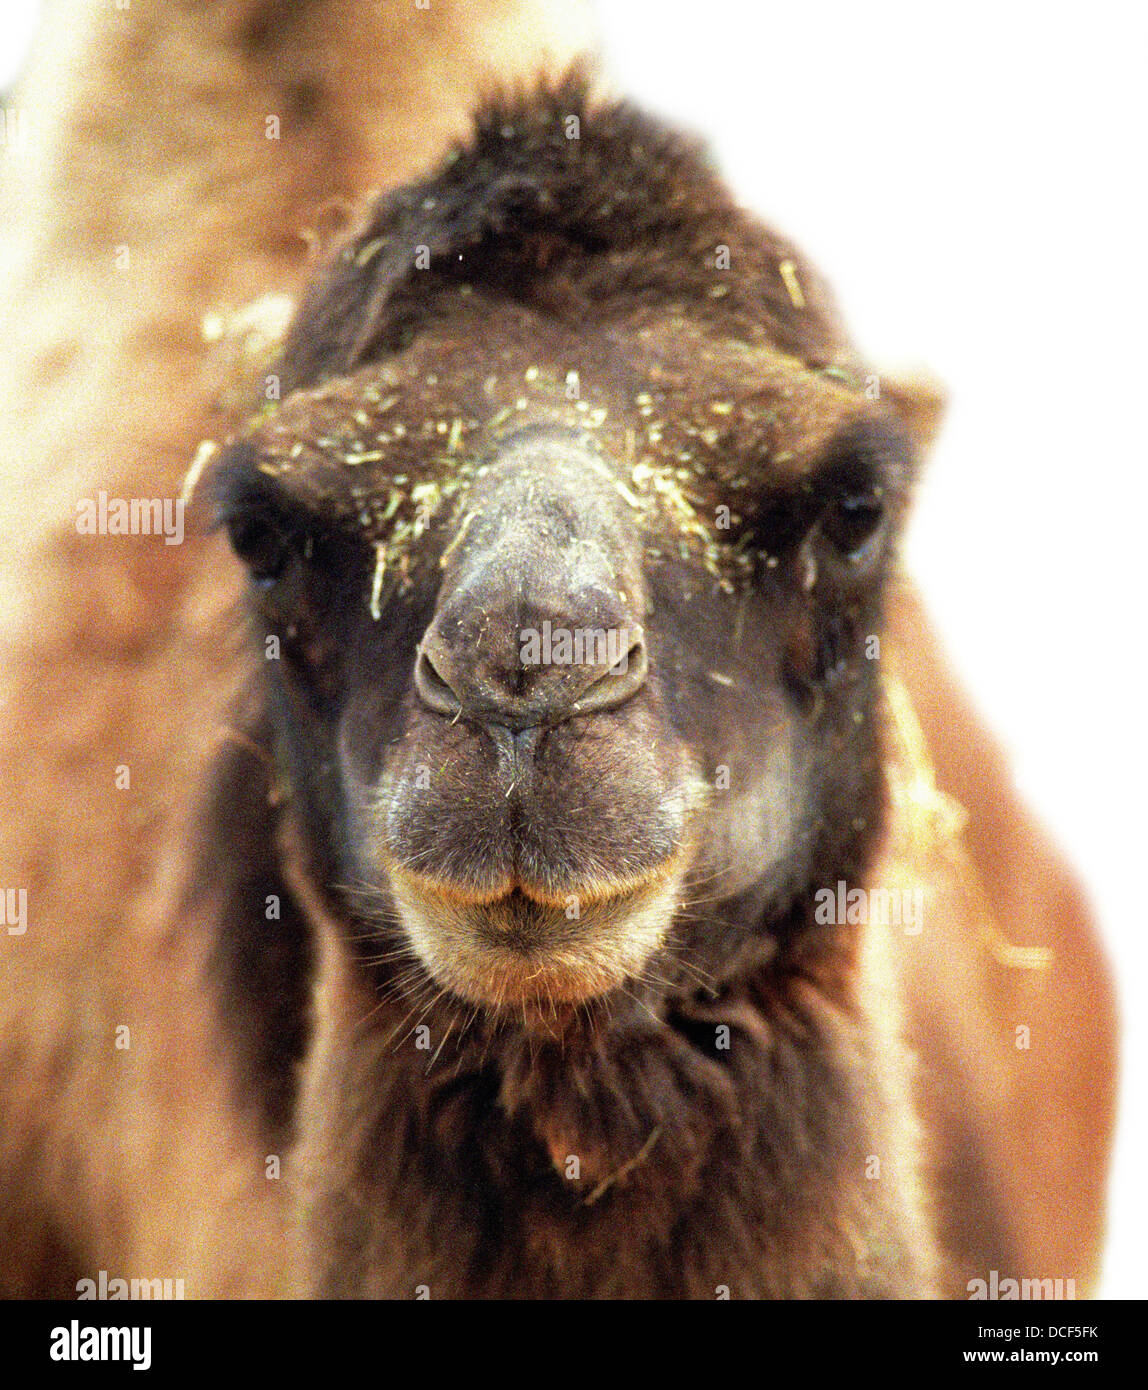 Camel headshot looking at camera Stock Photo